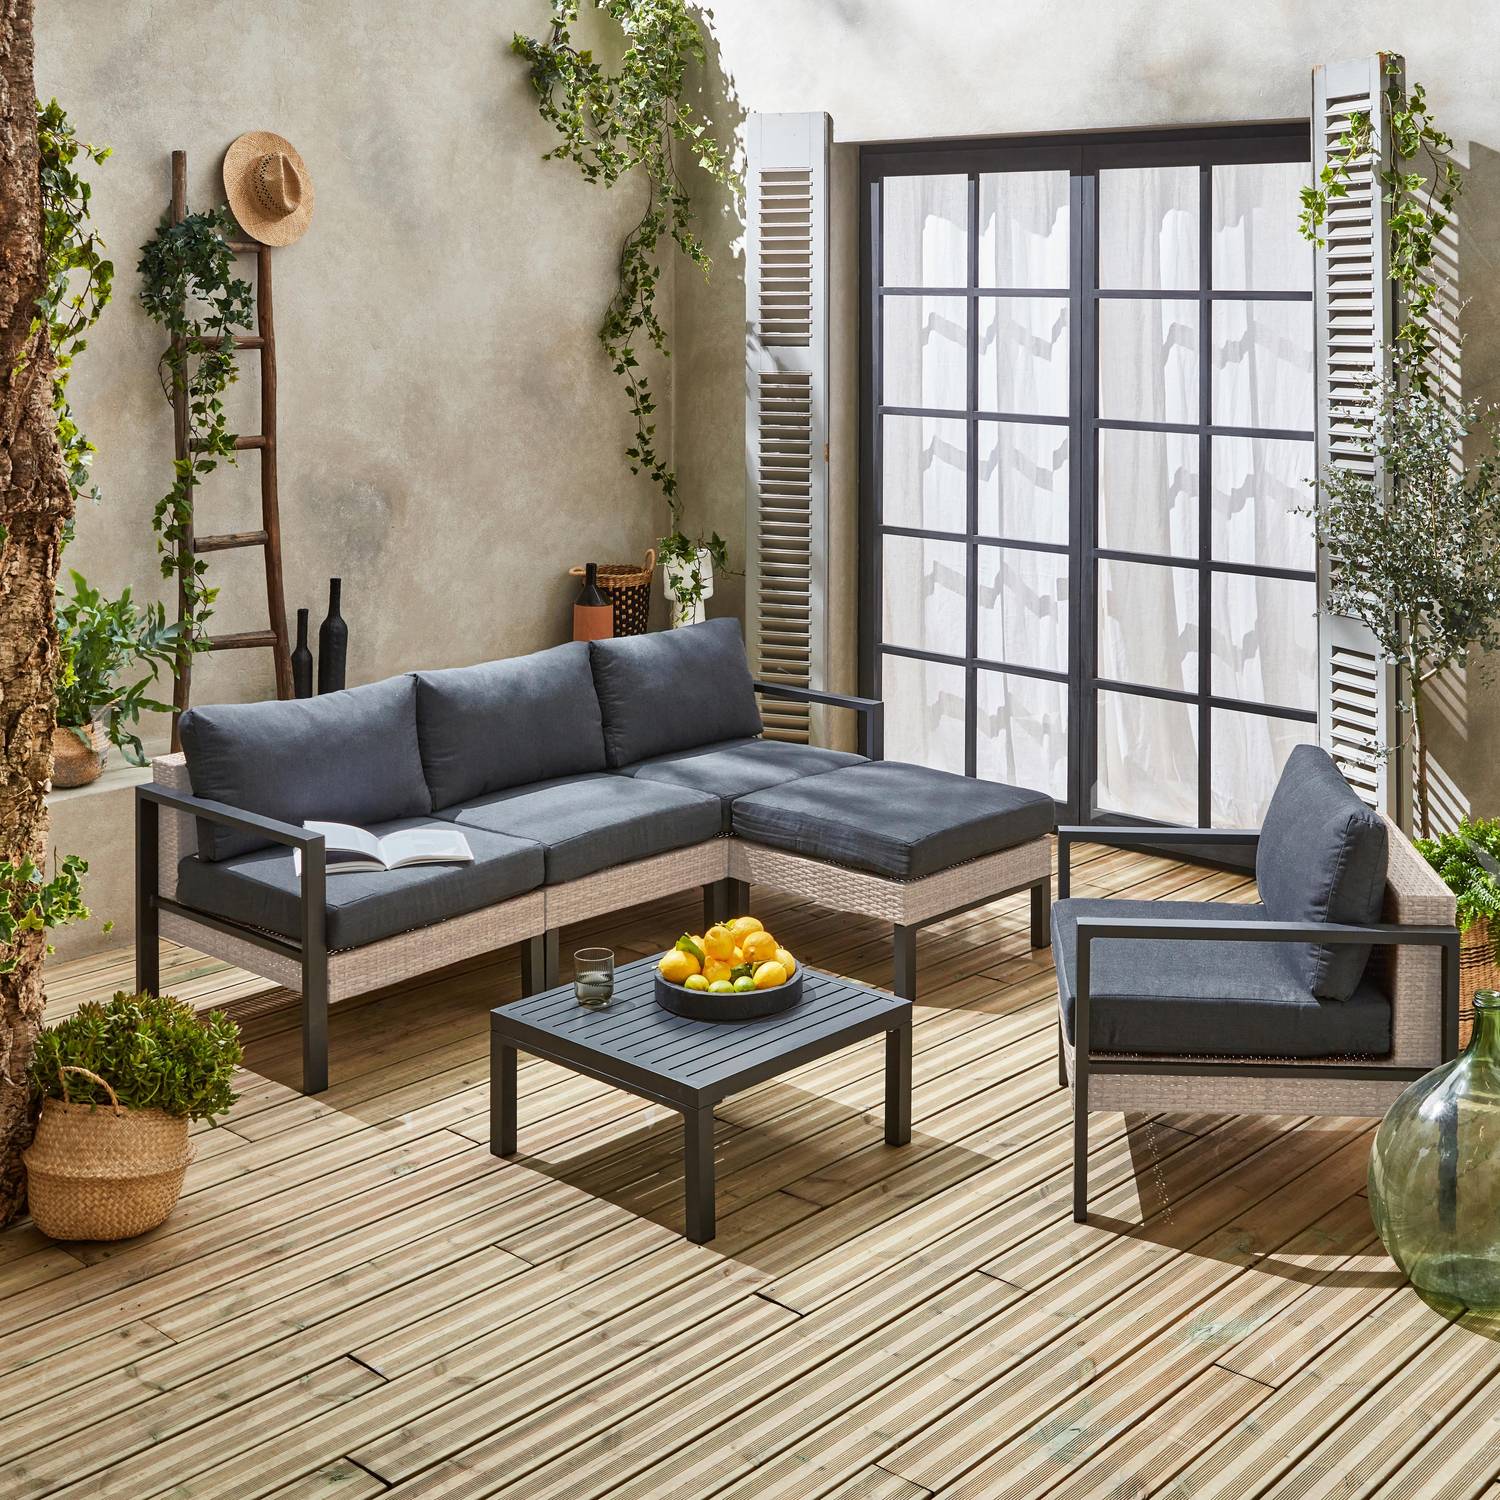 Set di mobili da giardino VELLETRI, grigio scuro, alluminio, resina intrecciata, 5 posti L68 x P74 x H63/76cm Photo3